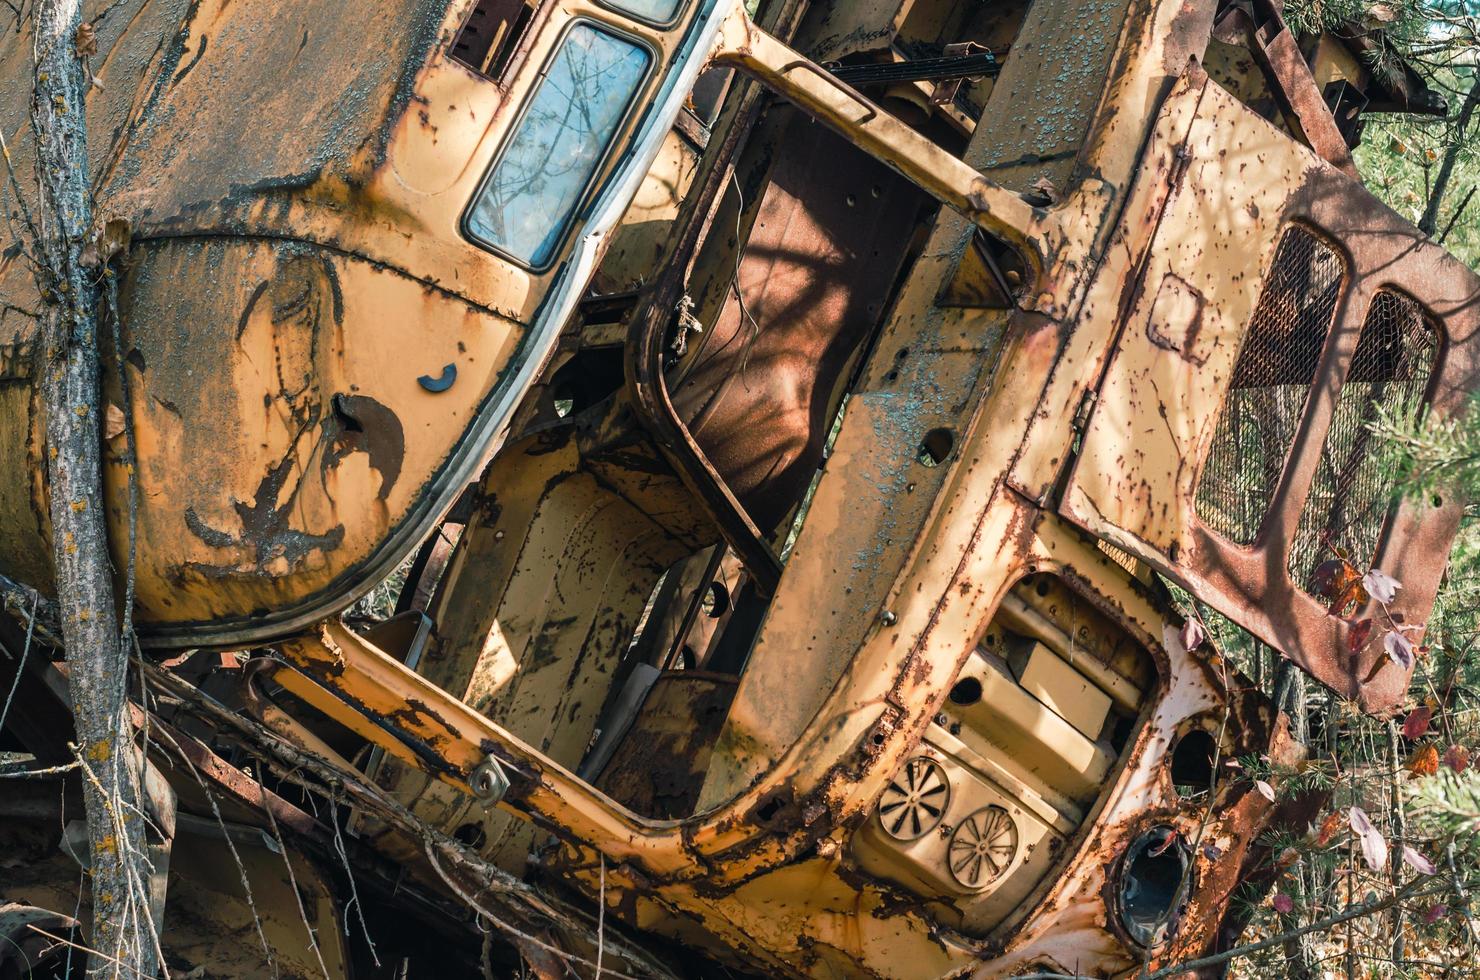 pripyat, oekraïne, 2021 - verlaten voertuig in het bos van Tsjernobyl foto